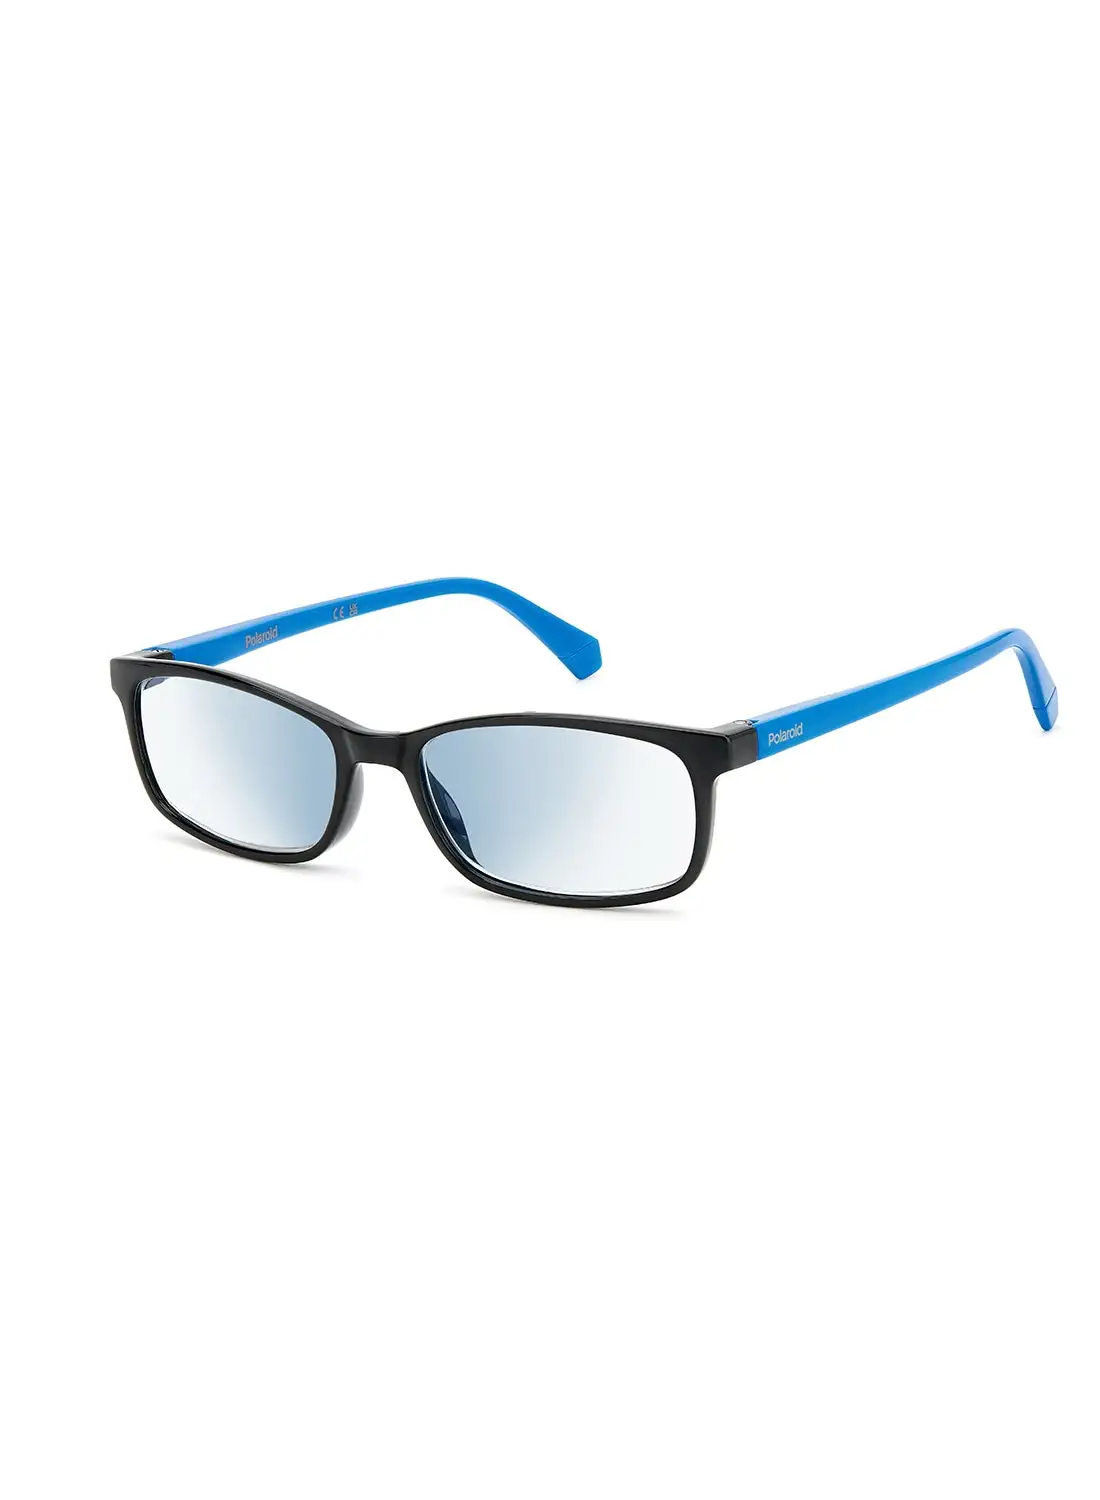 بولارويد نظارات قراءة للرجال - Pld 0035/R/Bb أسود 54 - مقاس العدسة: 54 ملم